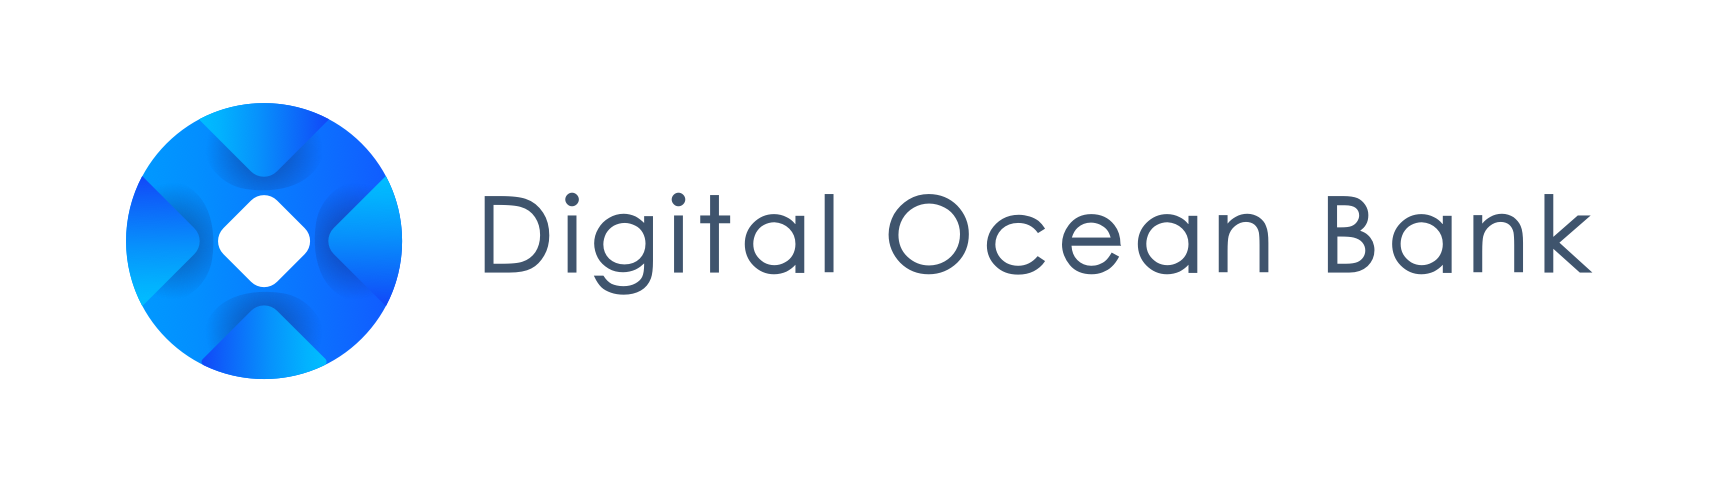 Digital Ocean Bank Limited